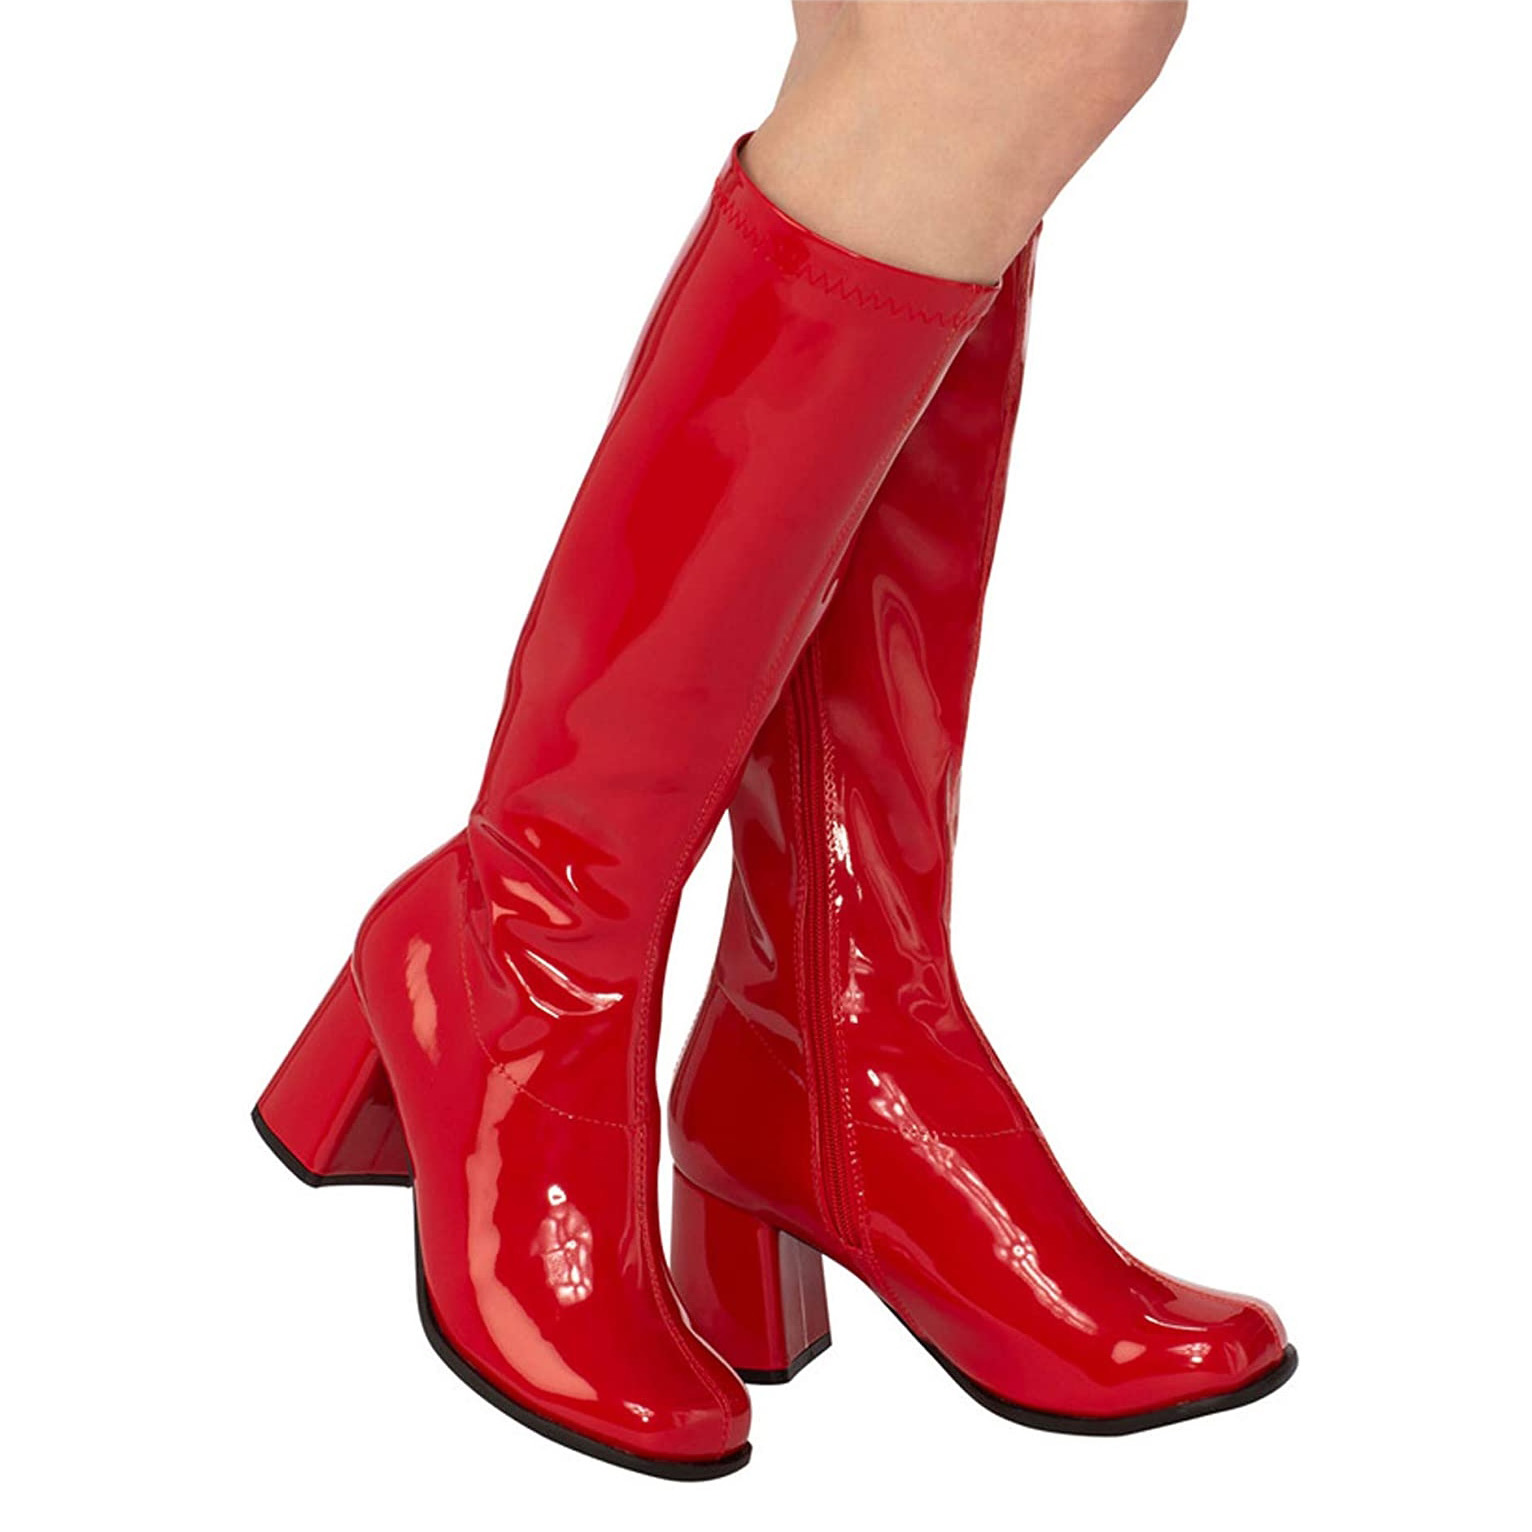 rojas charol tacón ancho 7,5 cm - años 70 hippie disco gogo - botas debajo de rodilla